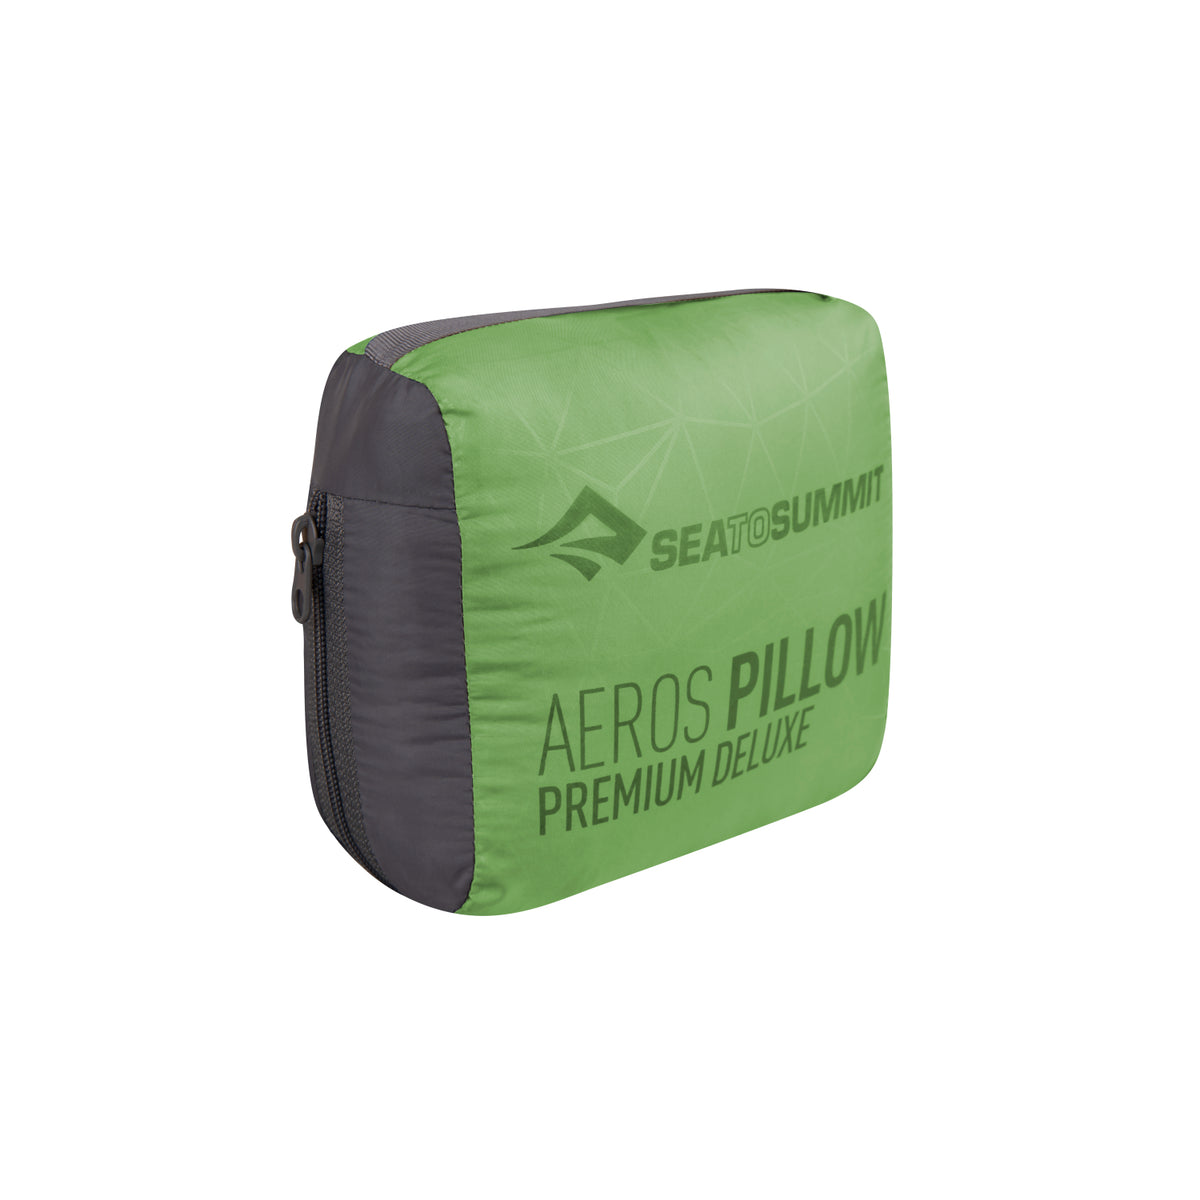 Sea to Summit Aeros Premium Deluxe Pillow (XL) in storage bag